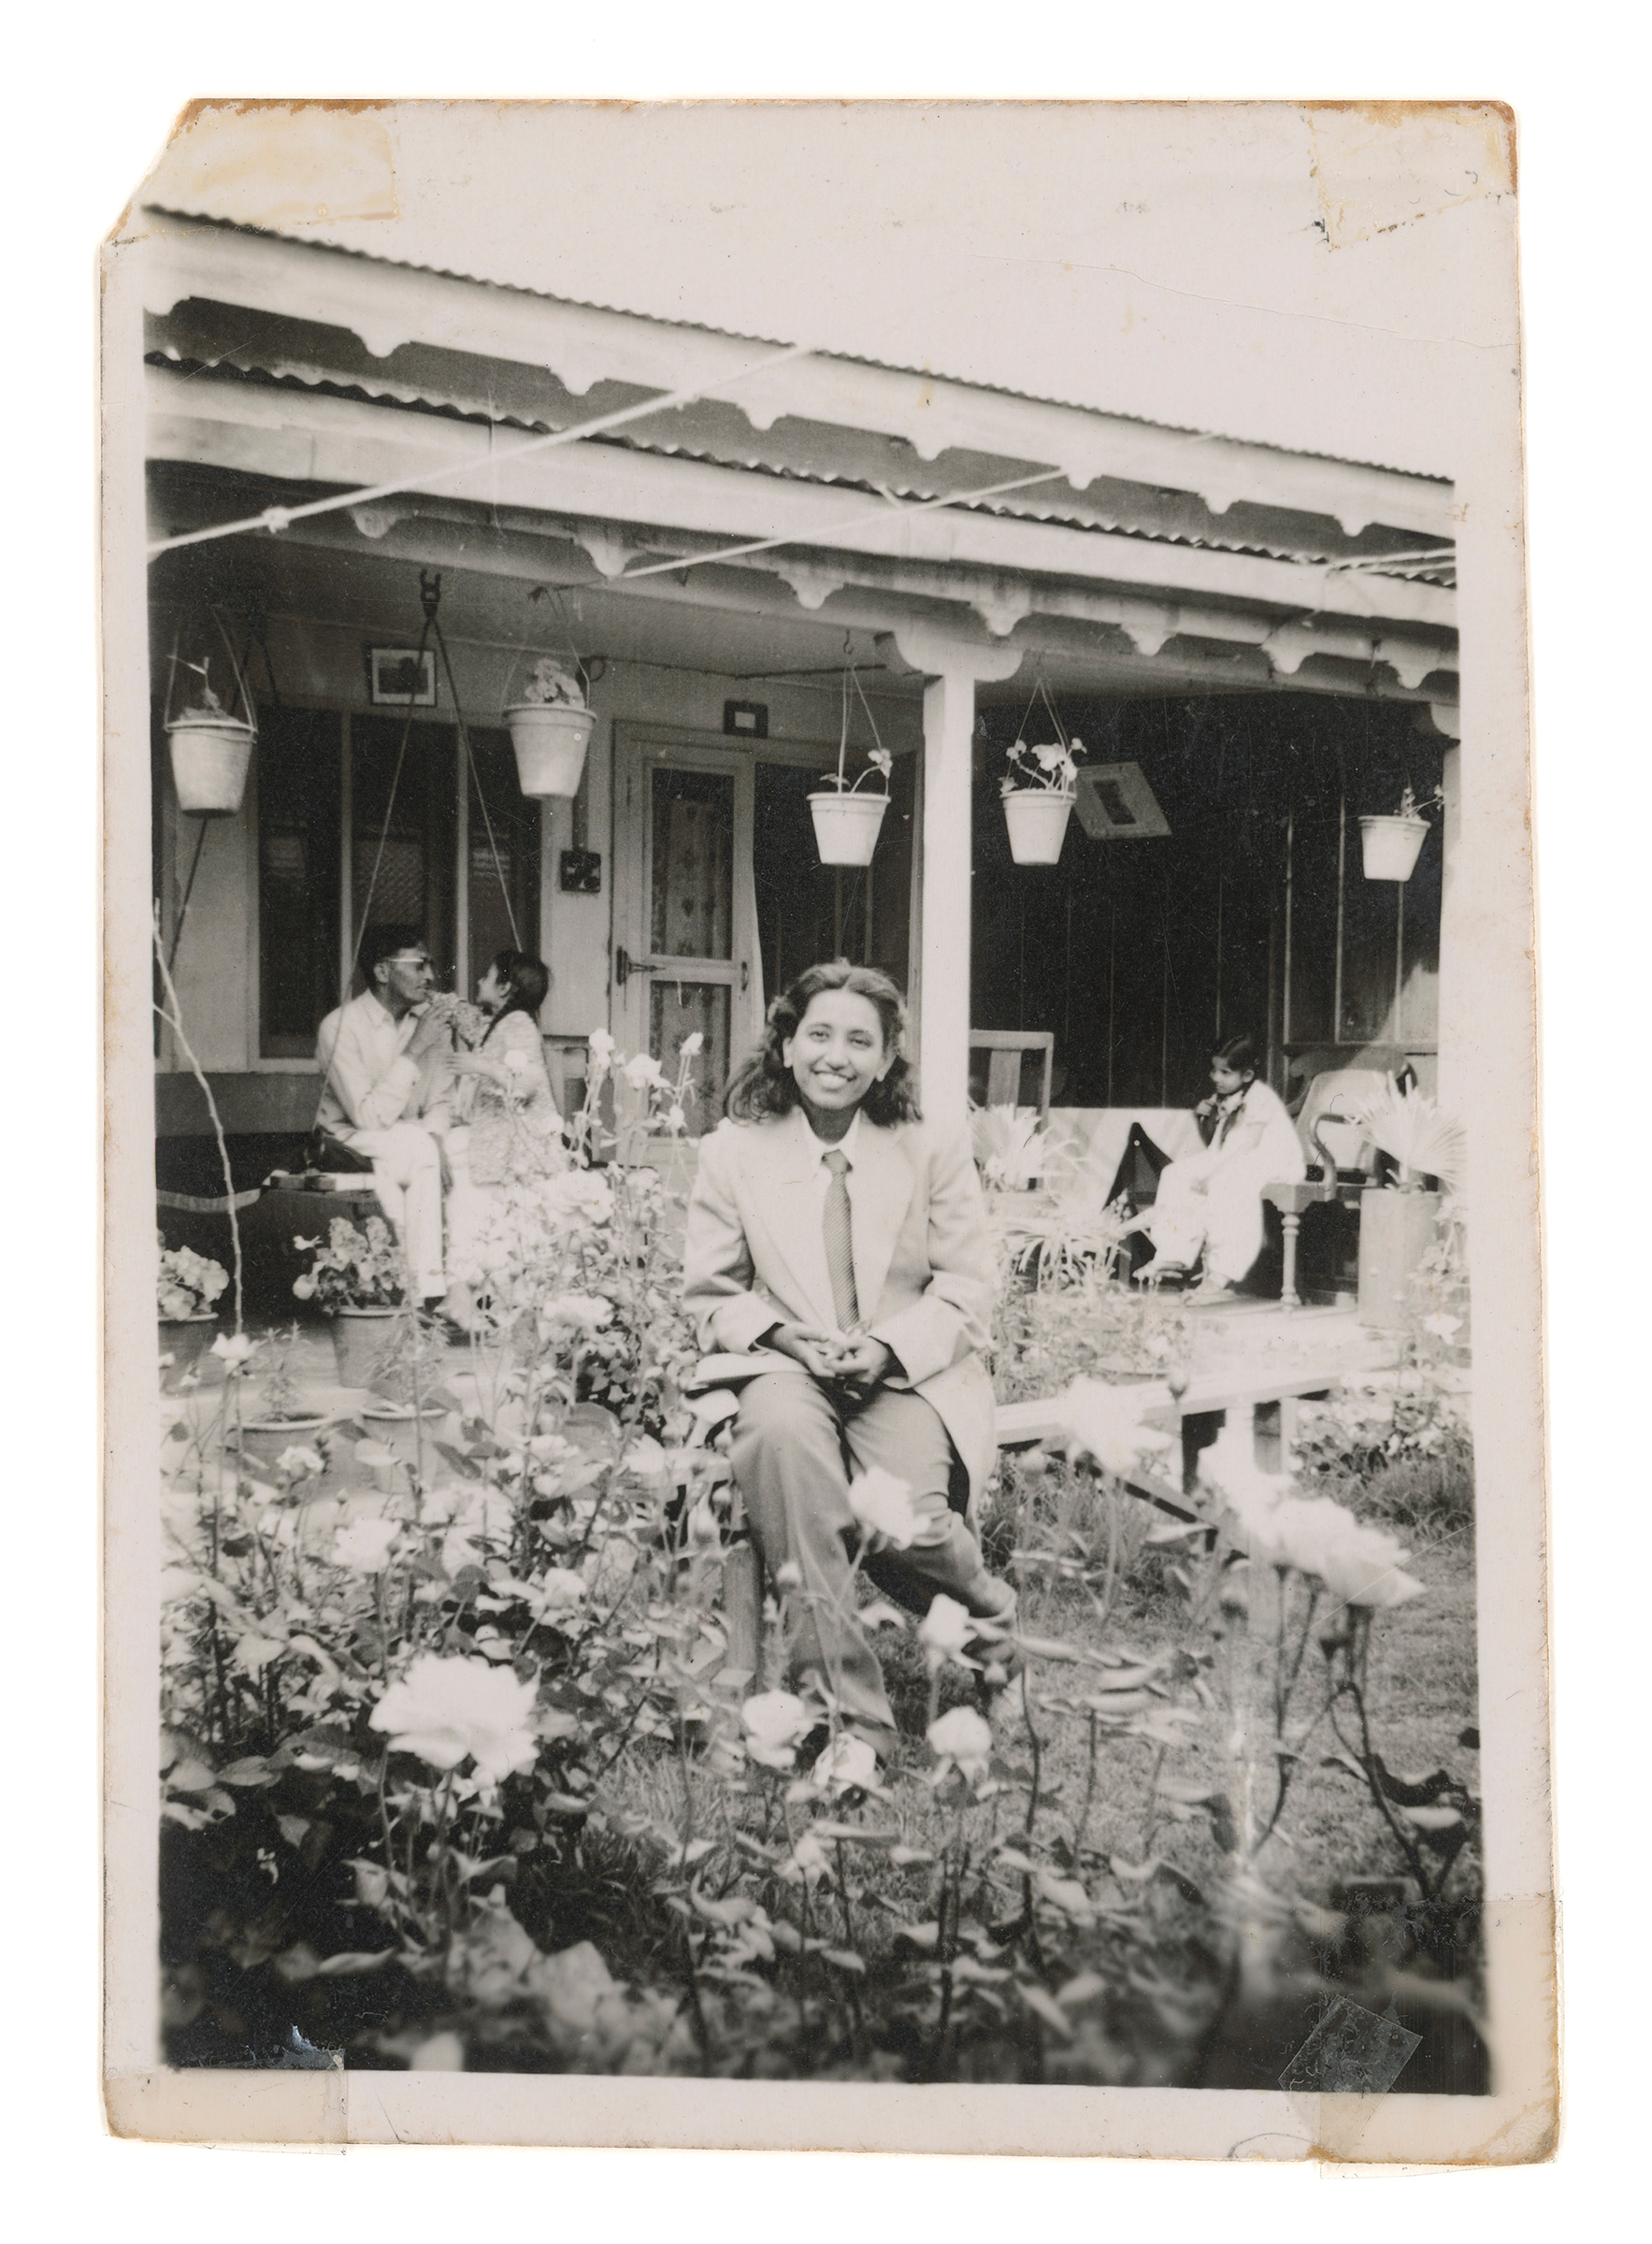     Zinnia Naqvi, Nani in Garden, 1948, 2017. Inkjet print, 48&#215;35 in. Courtesy of the artist.

